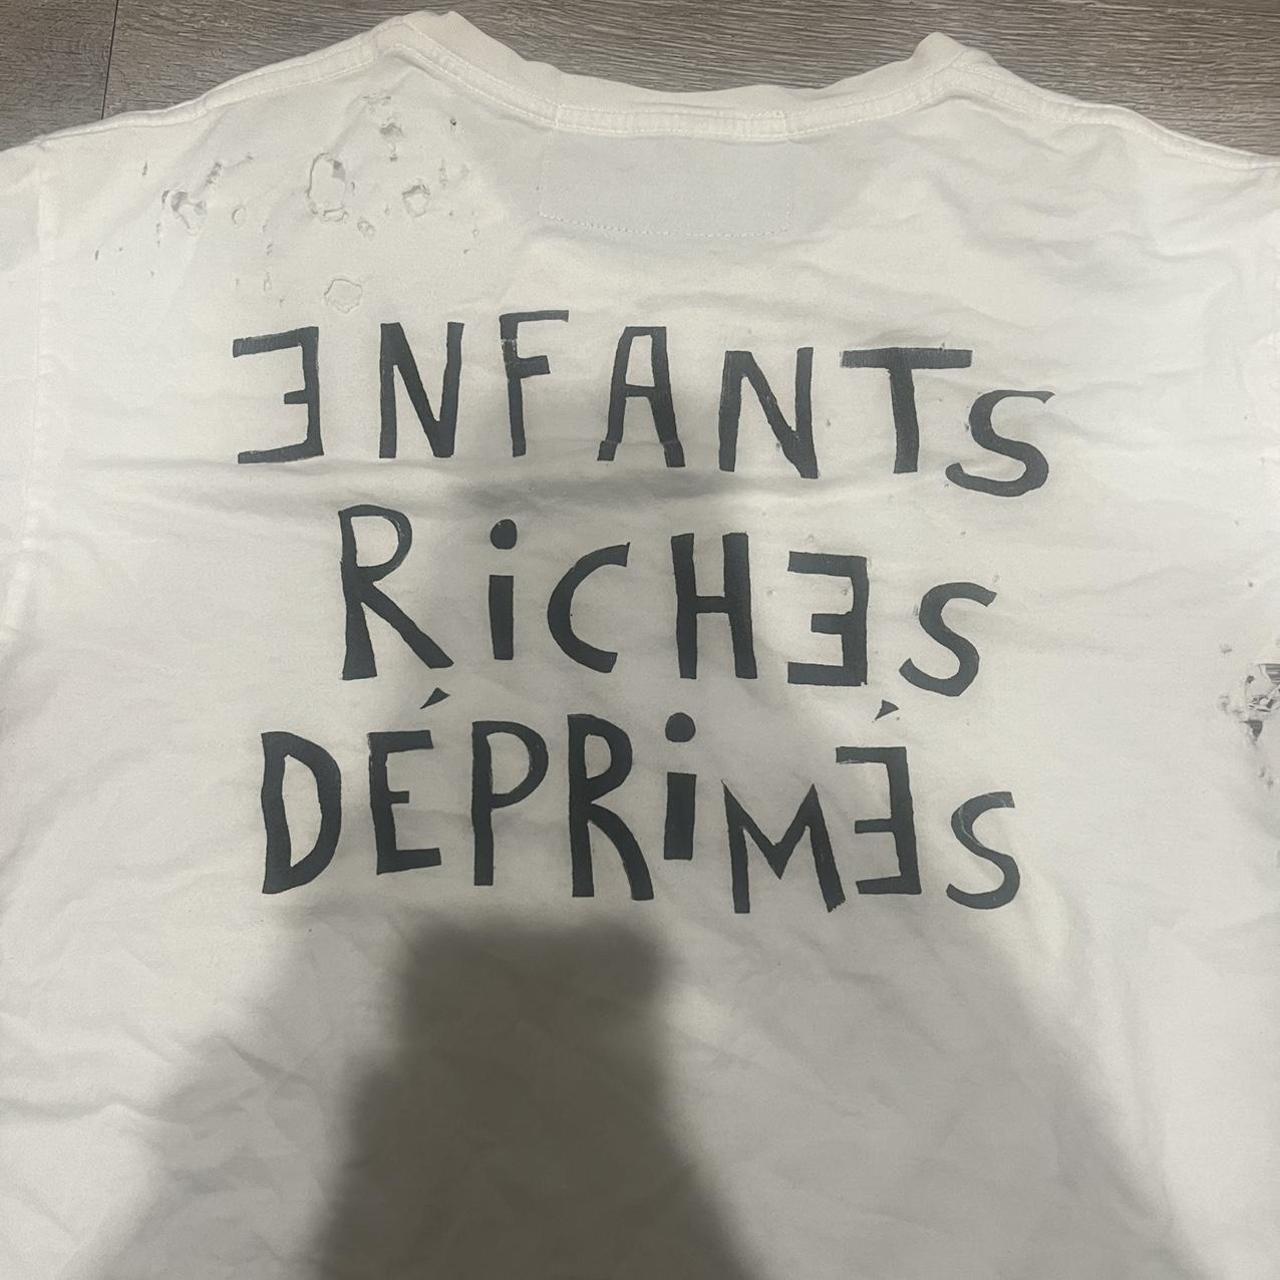 Enfants Riches Déprimés Men's White and Black T-shirt (3)